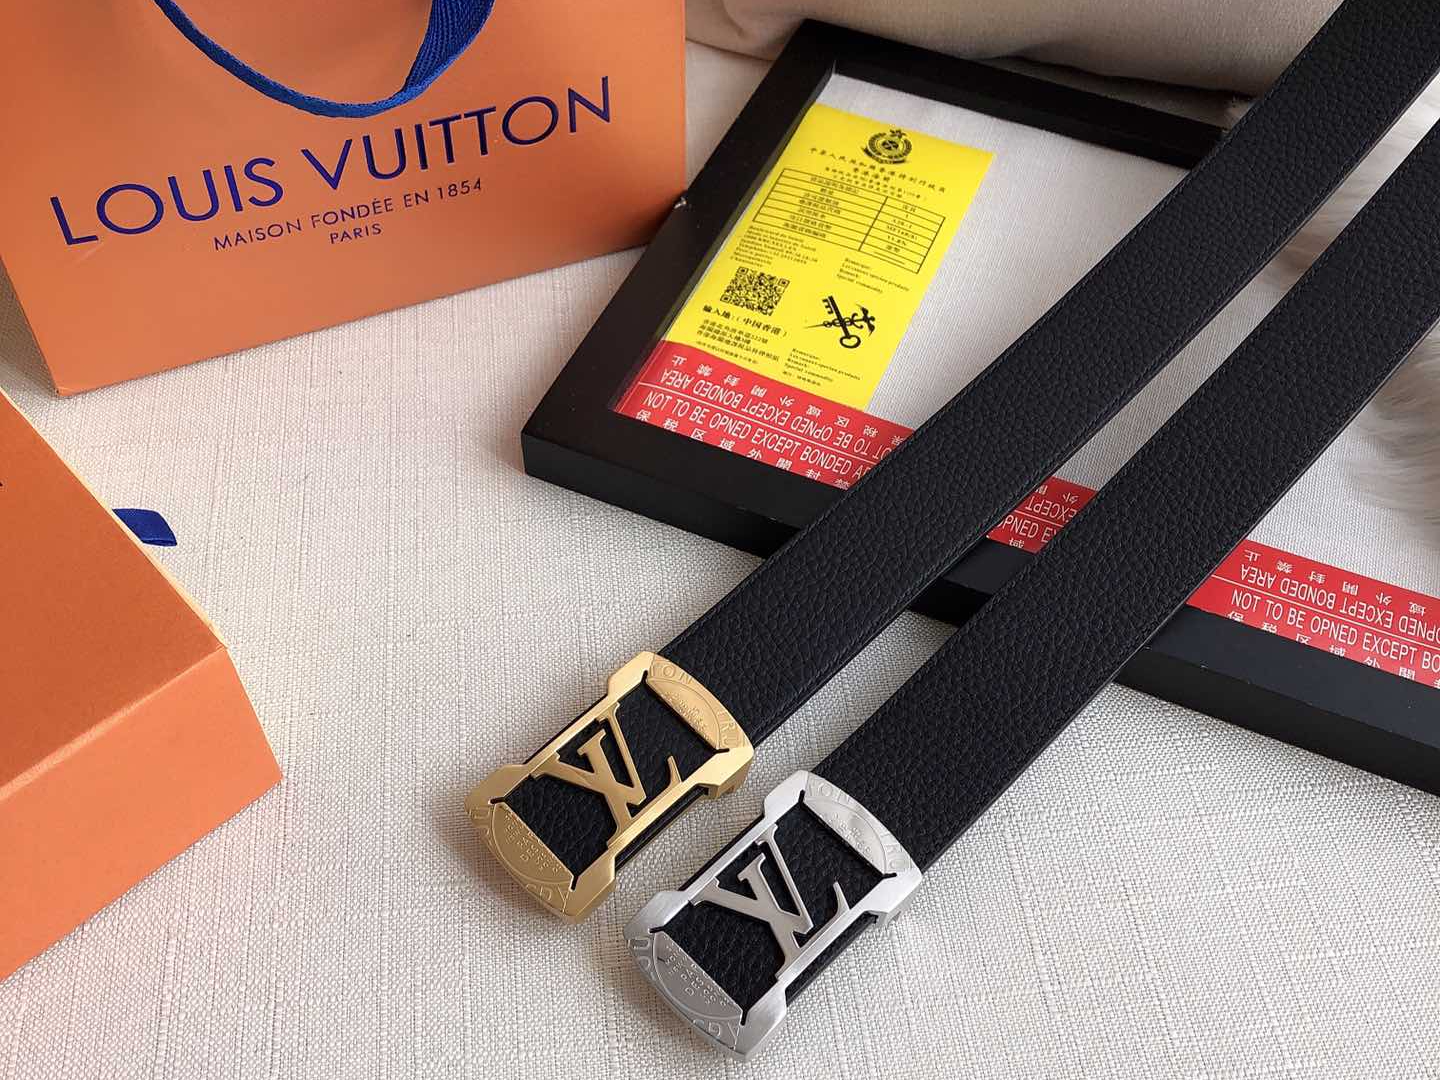 Mua dây lưng Louis Vuitton chính hãng ở đâu?